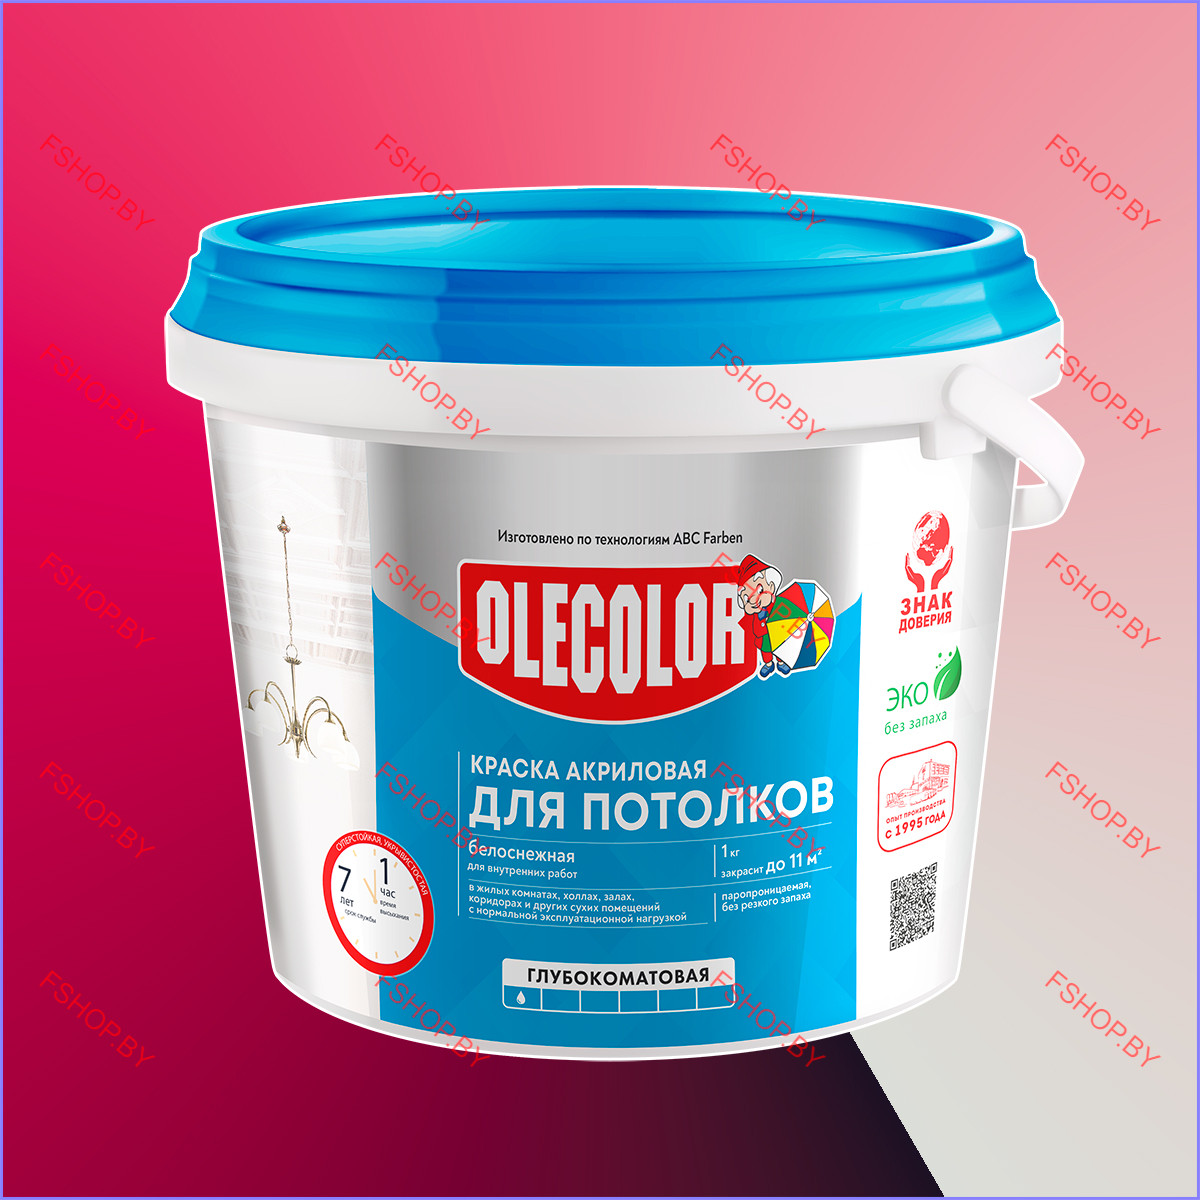 Краска акриловая на потолок Olecolor - 3 кг